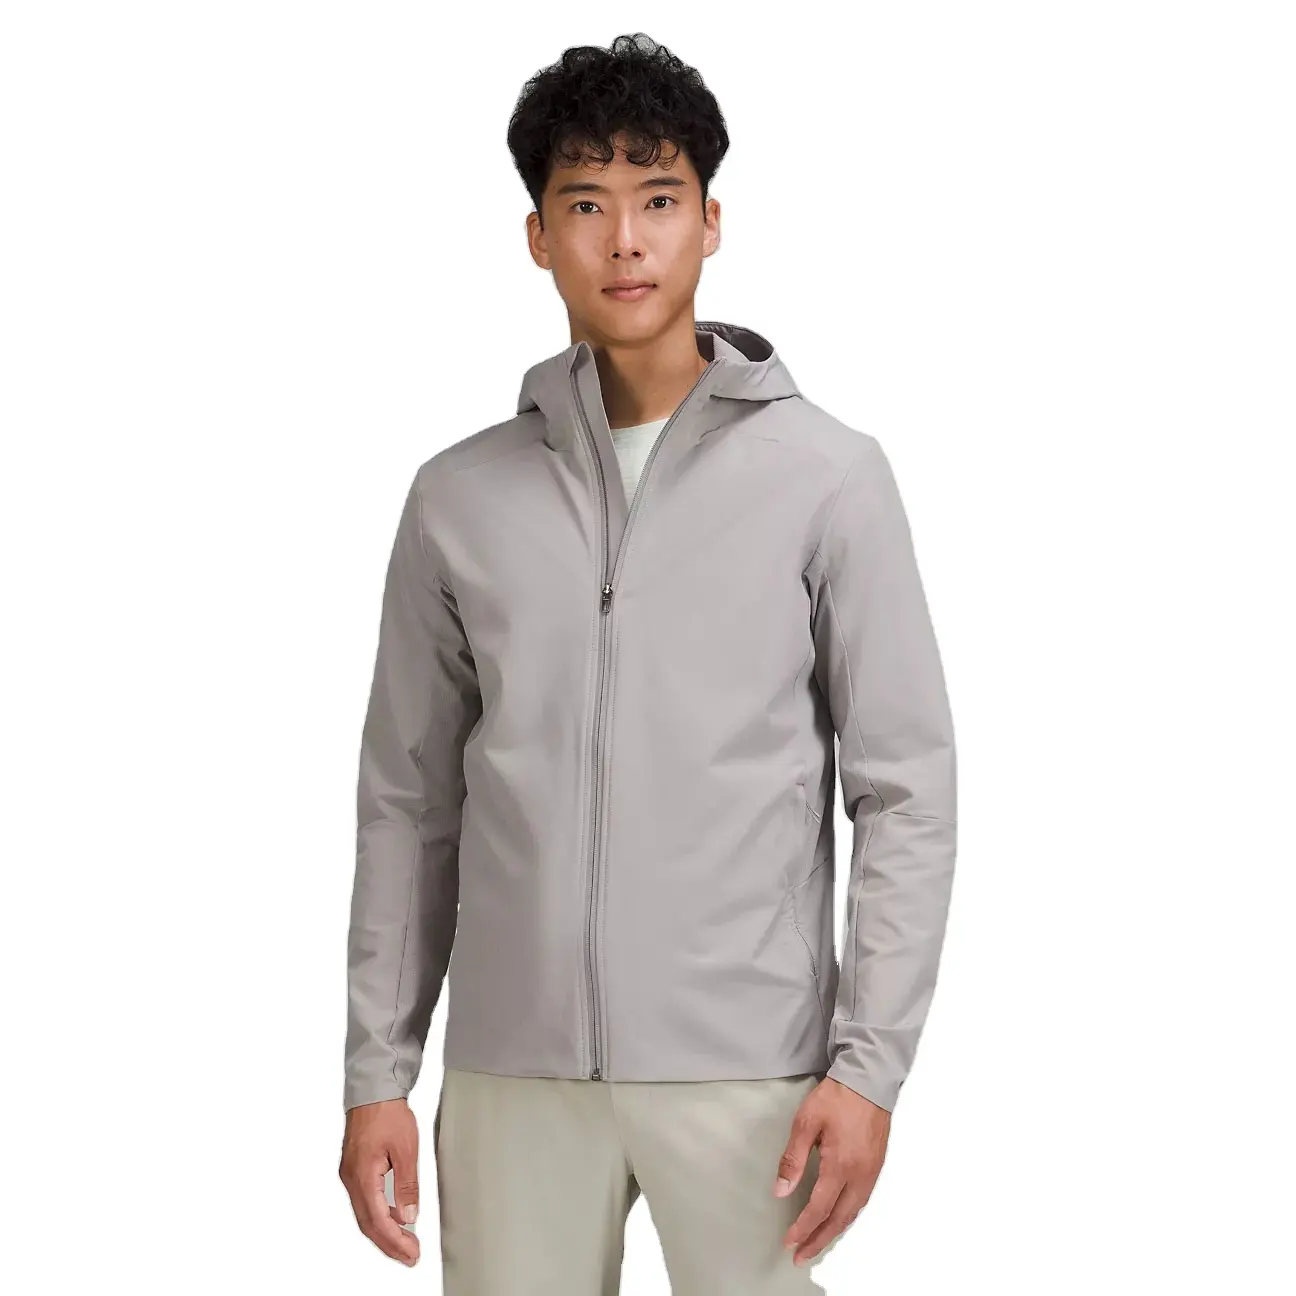 男性のためのオリジナルの高級ファッションジャケットをトレーニングするための超快適なデザインのジャケット